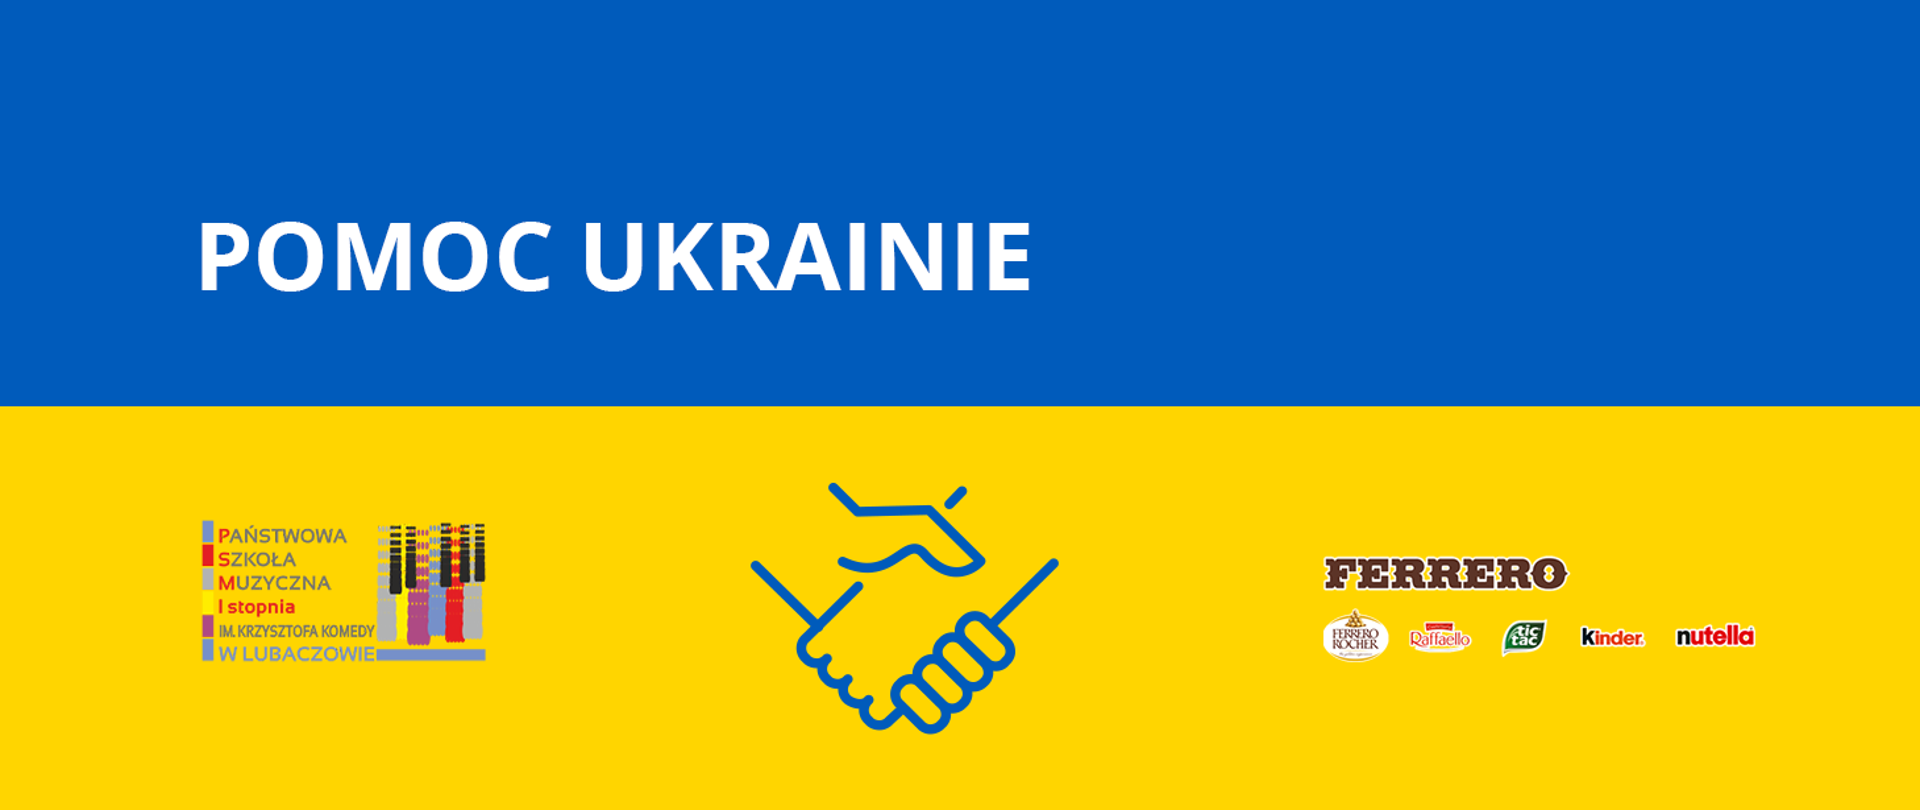 Grafika na tle barw Ukrainy z logo szkoły po lewej stronie i logo firmy Ferrero po prawej stronie z tekstem "Pomoc Ukrainie" oraz ikoną dłoni na środku